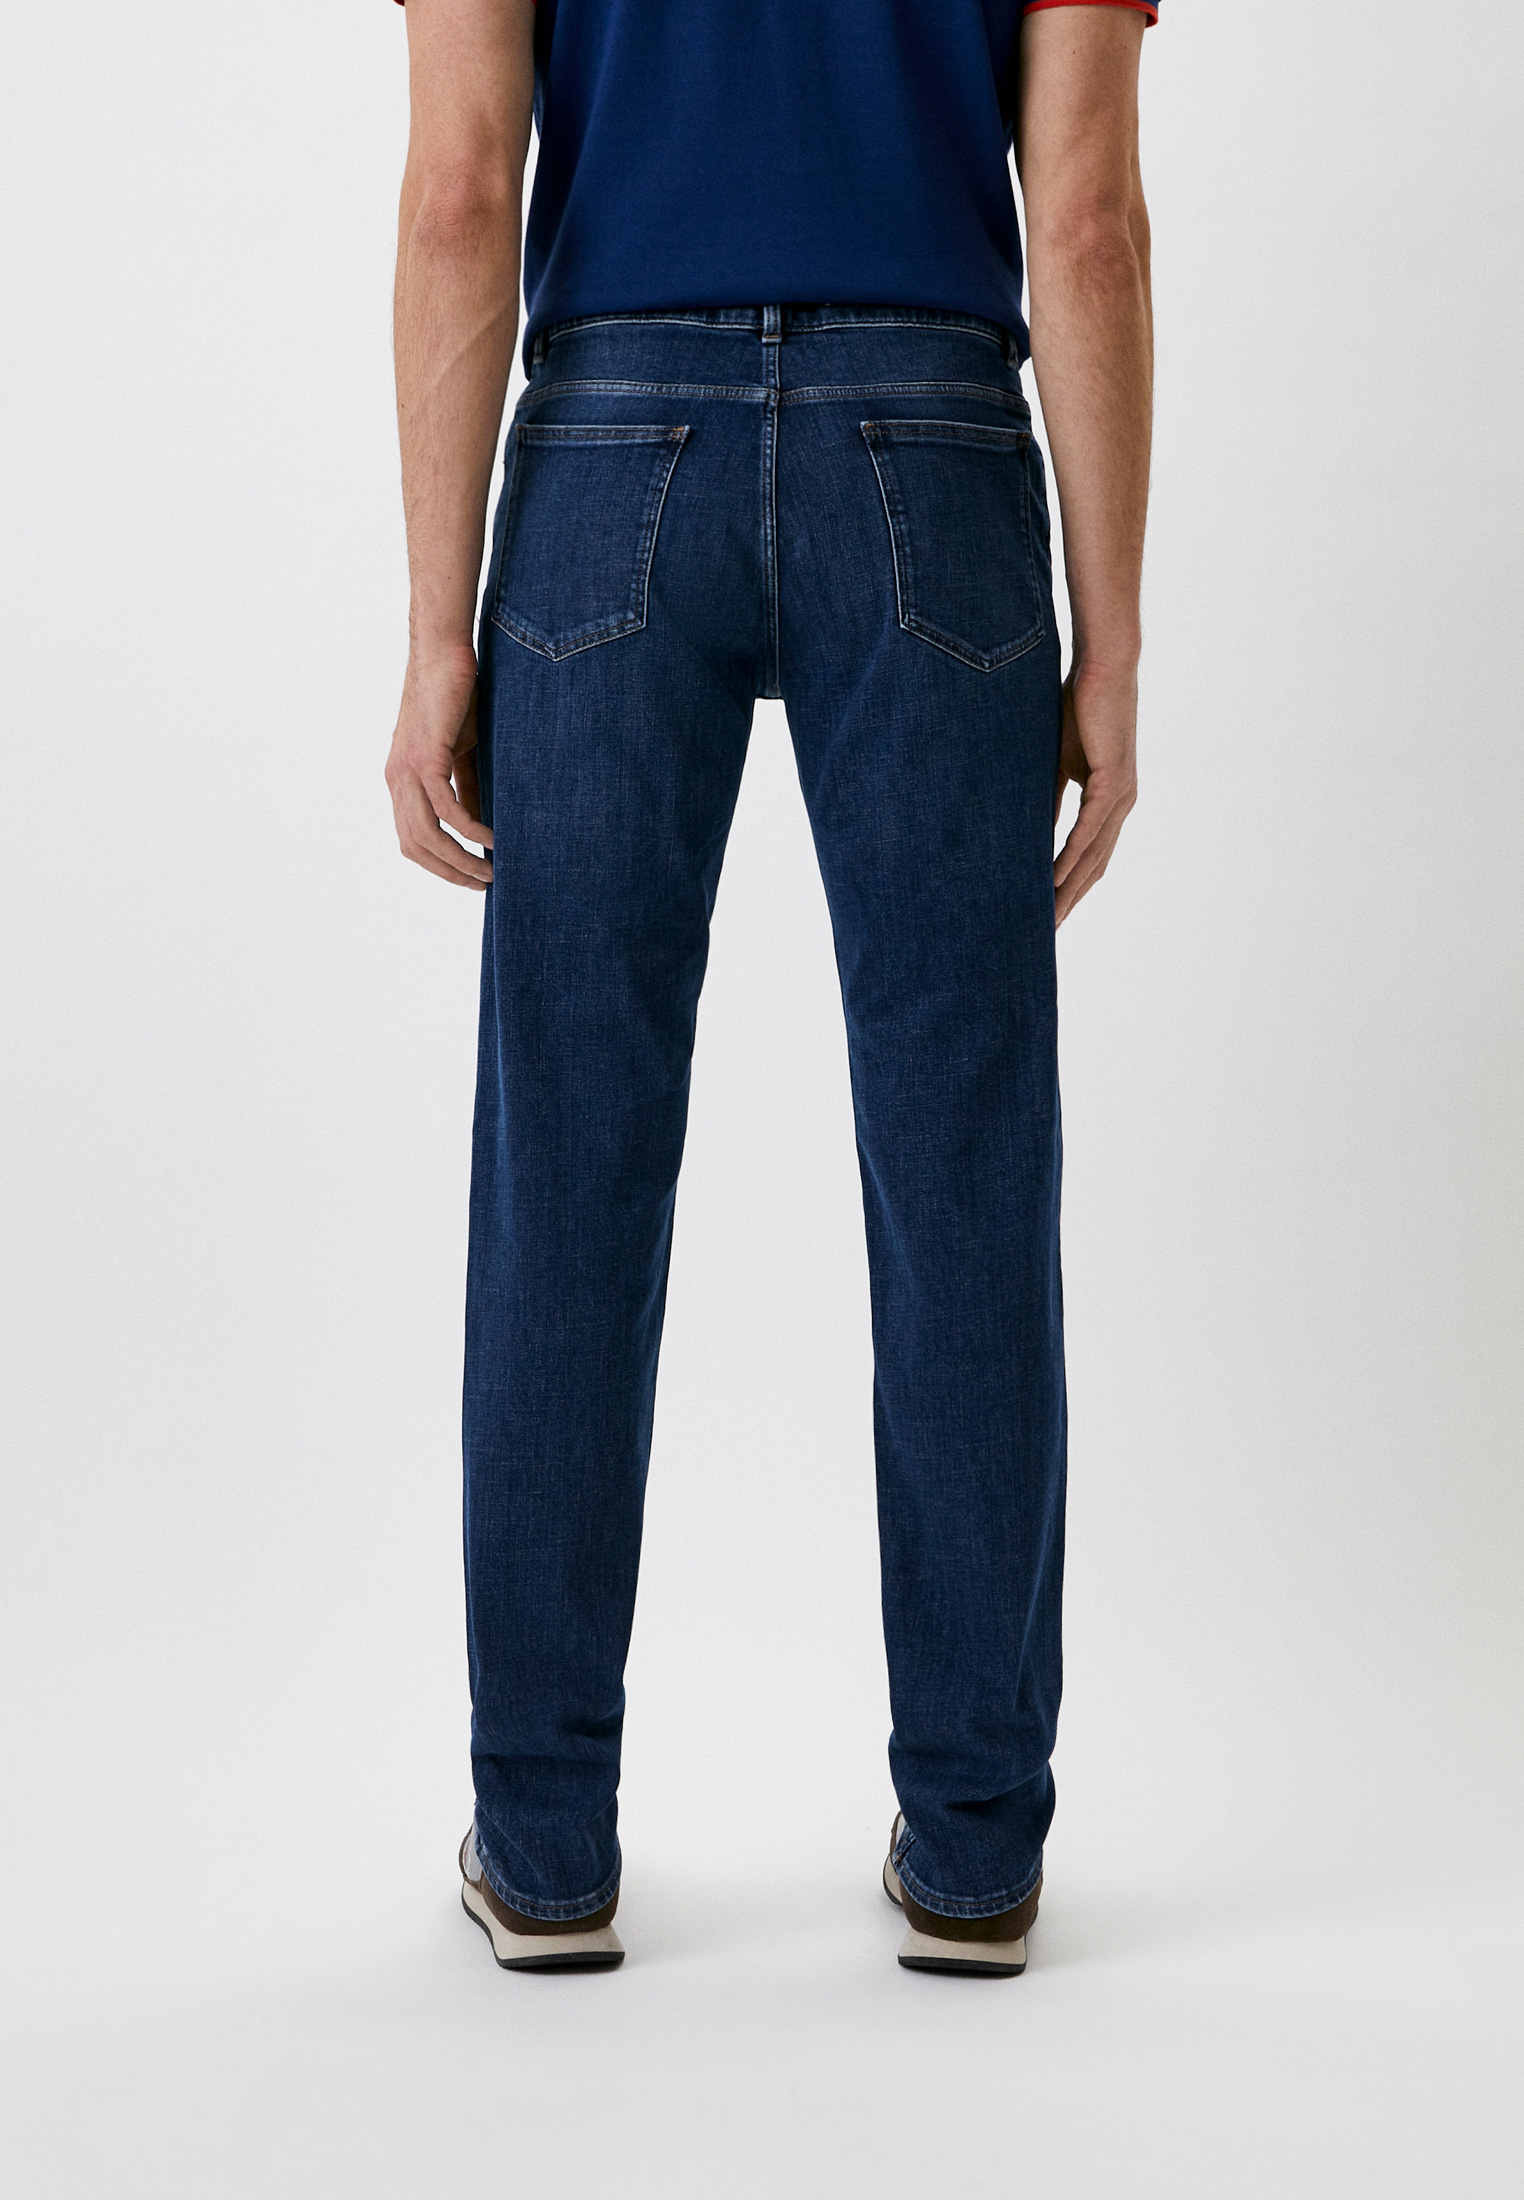 Мужские зауженные джинсы Trussardi (Труссарди) 52J00000-1Y000193: изображение 3